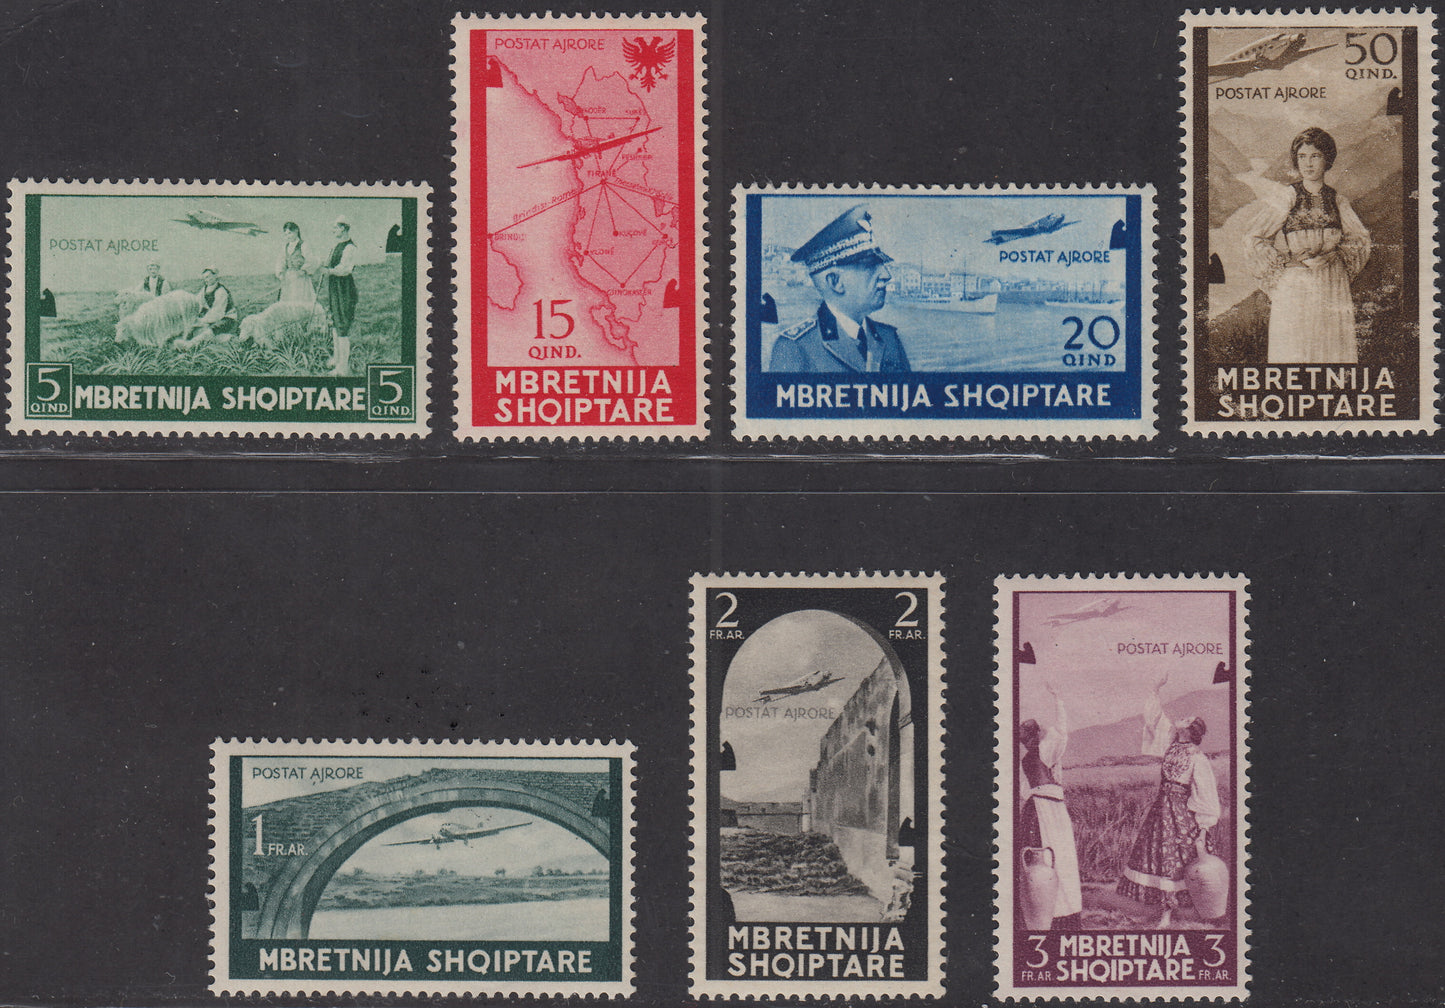 1940 -  Posta Aerea, serie ordinaria, soggetti e formati vari serie completa di 7 valori nuova con gomma originale (5/11).